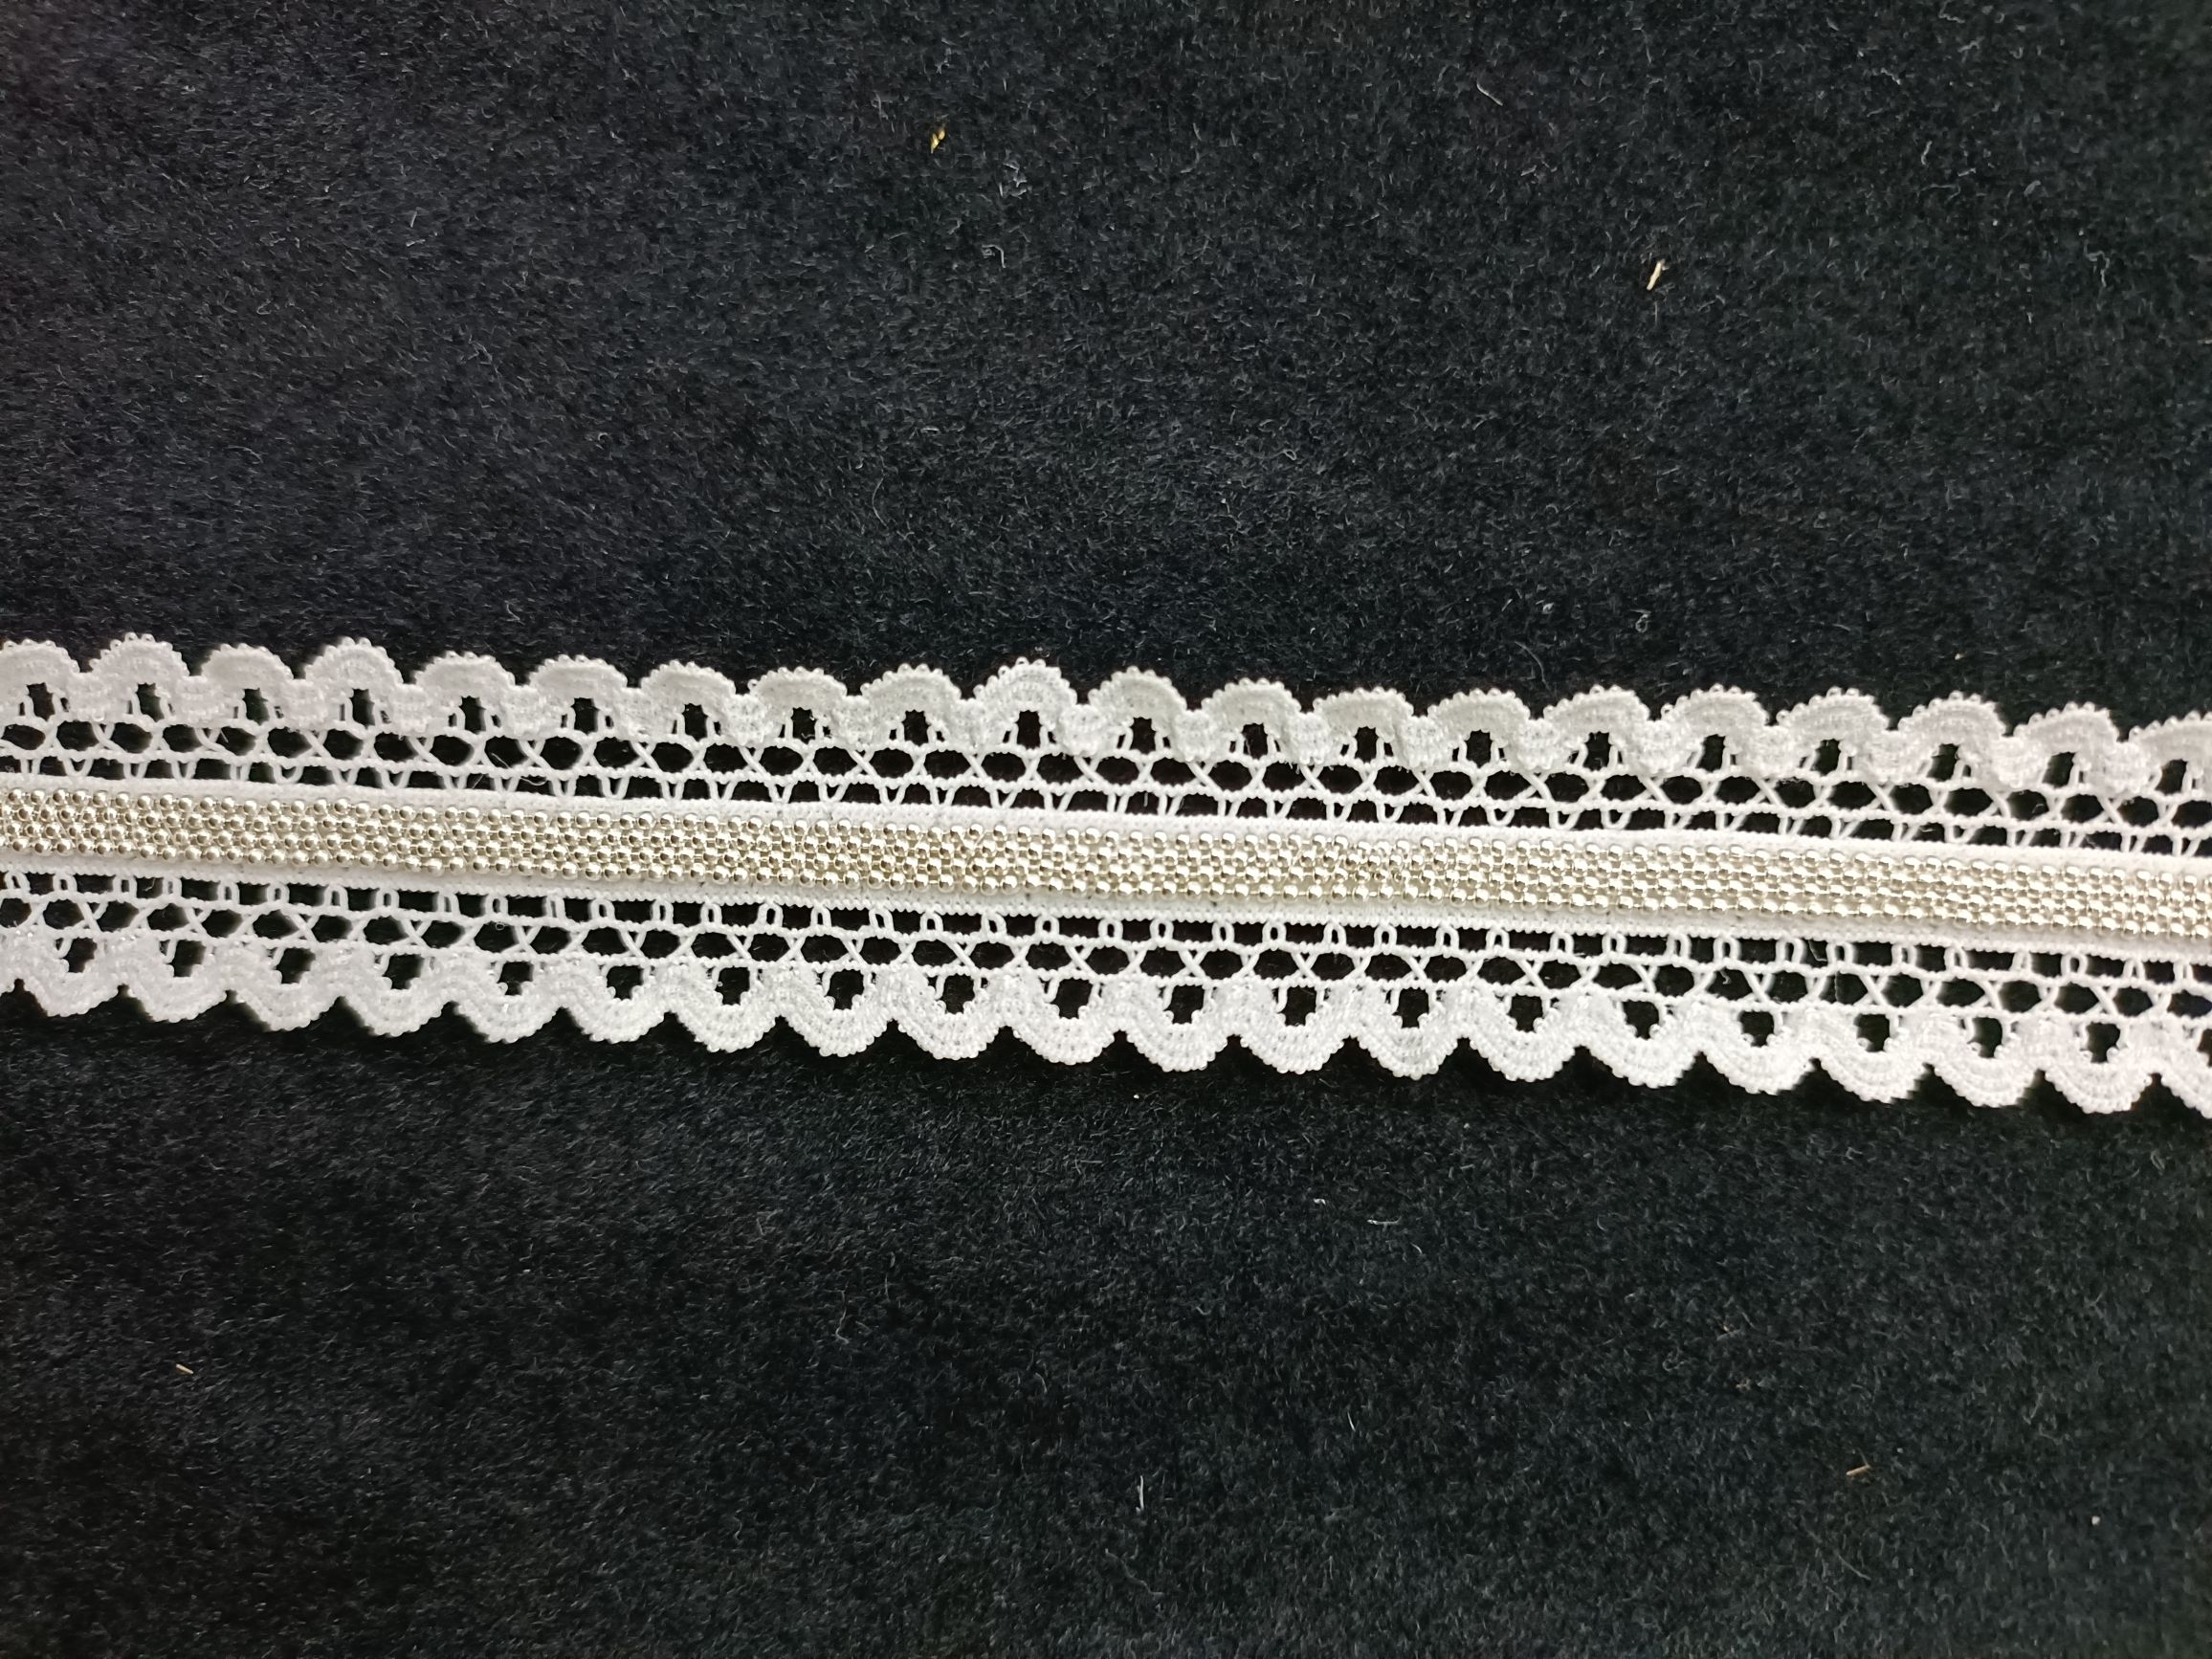 【缘织绣】 新型花边辅料1.2 圆珠银链 款式多多 规格可定做图